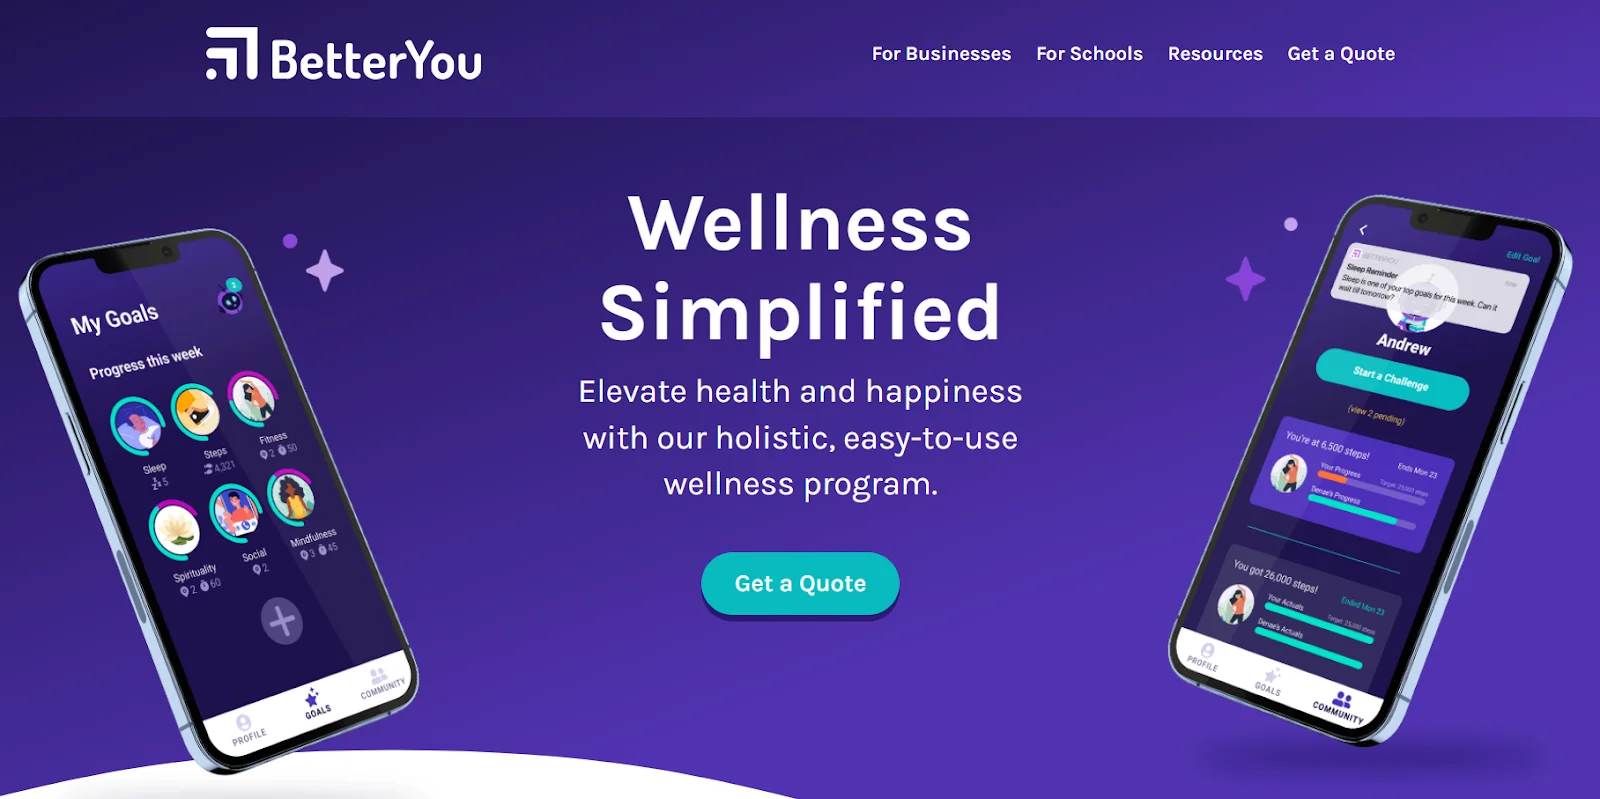 BetterYou Website - Wellness Simplified